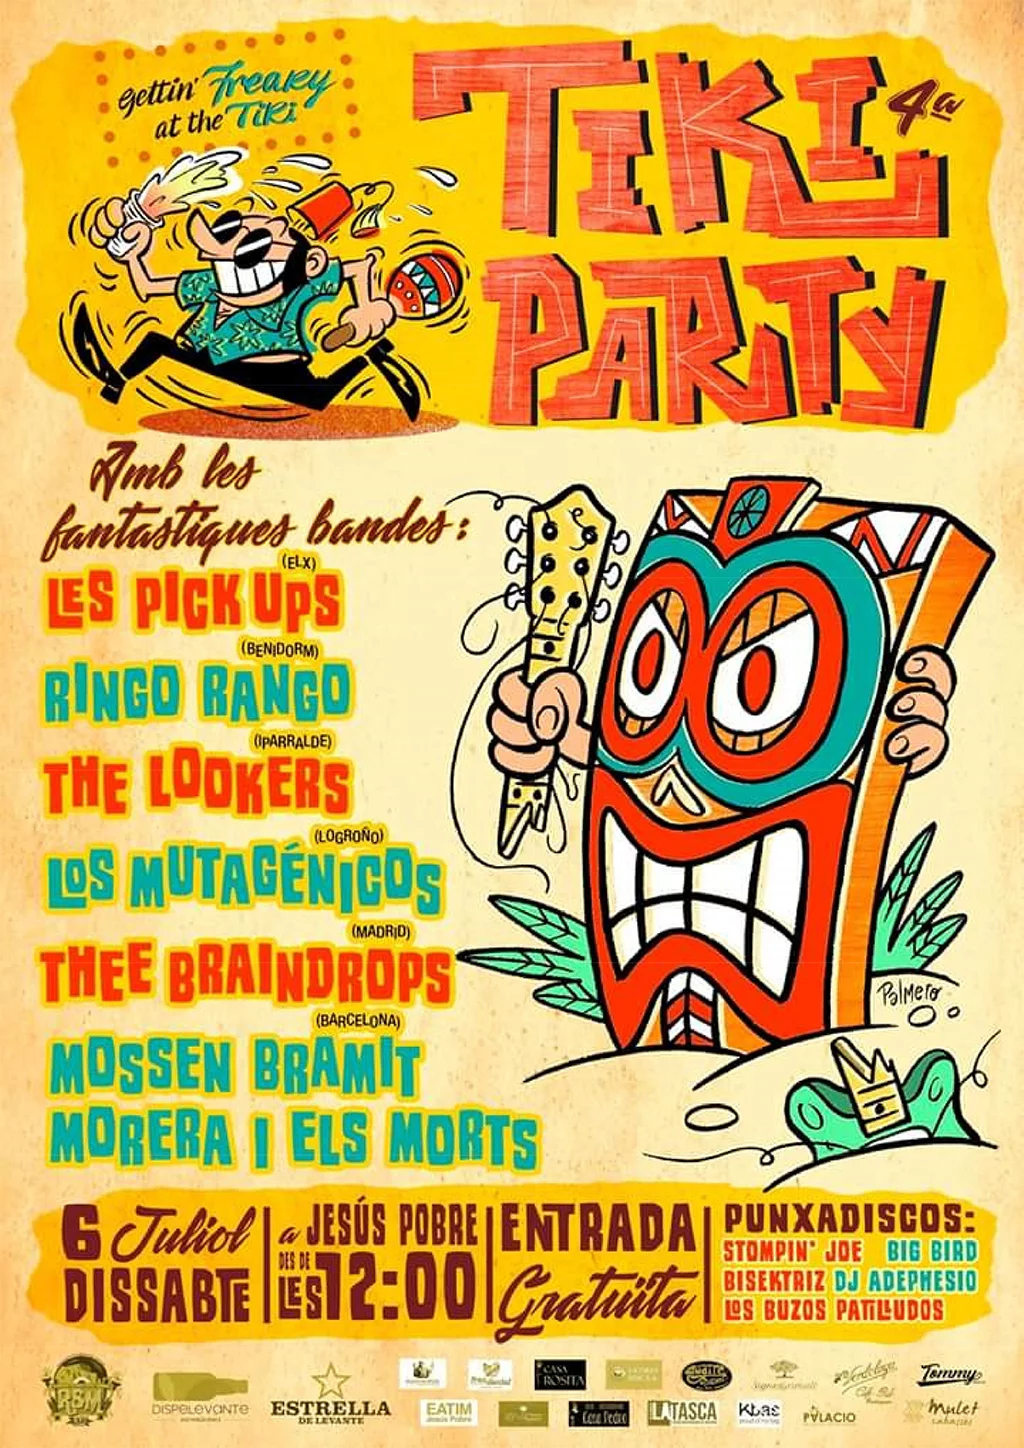 Cartel de la IV edición de la Tiki Party